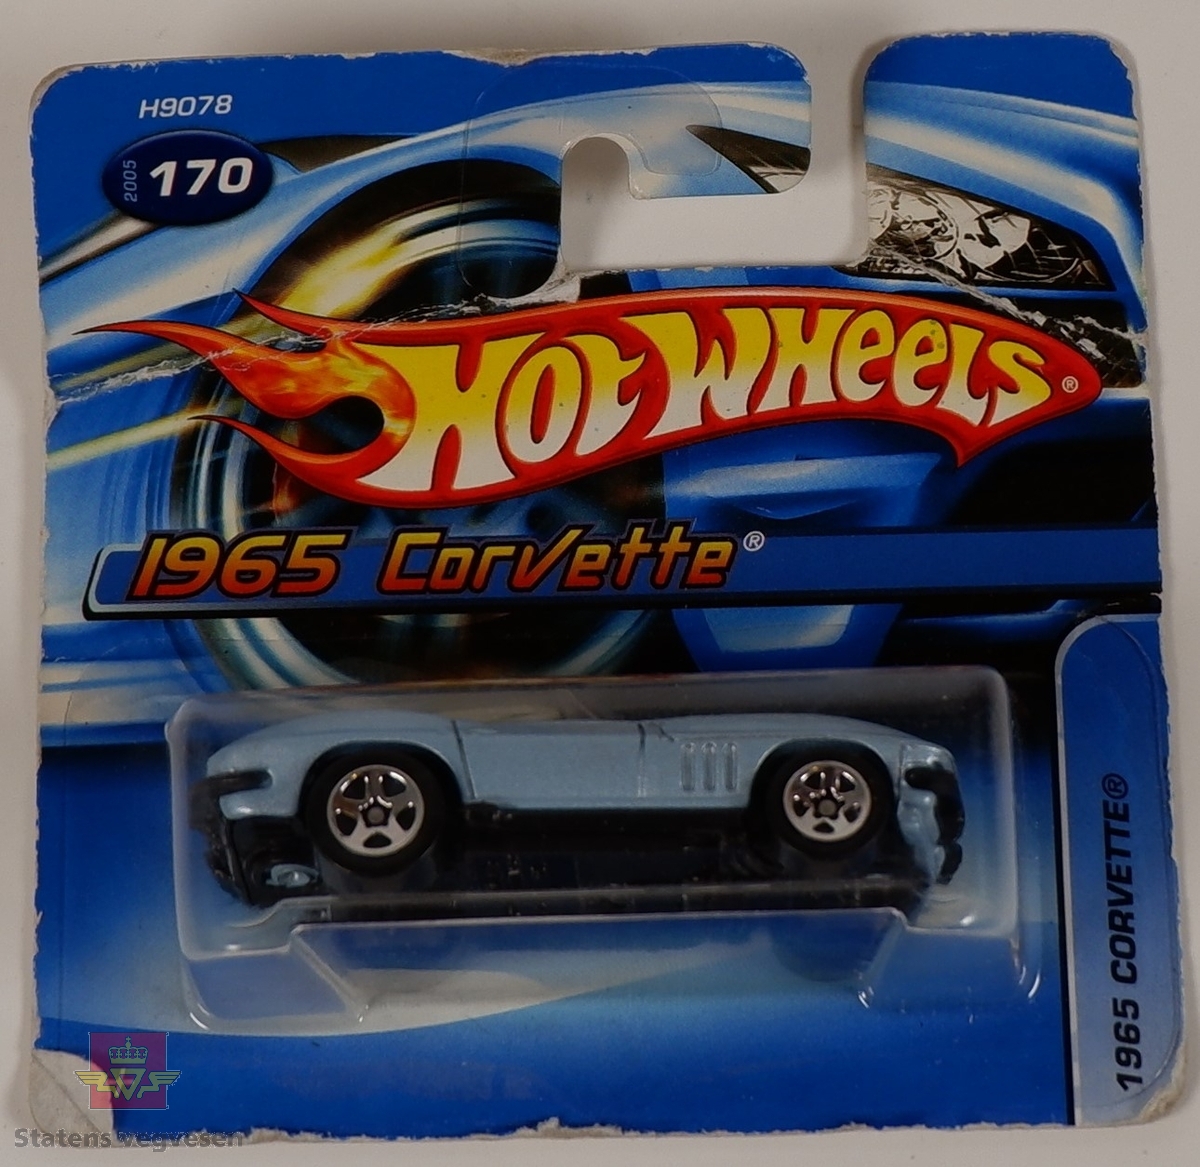 Modellbil av en 1965 Corvette, modellbilen er farget blå.